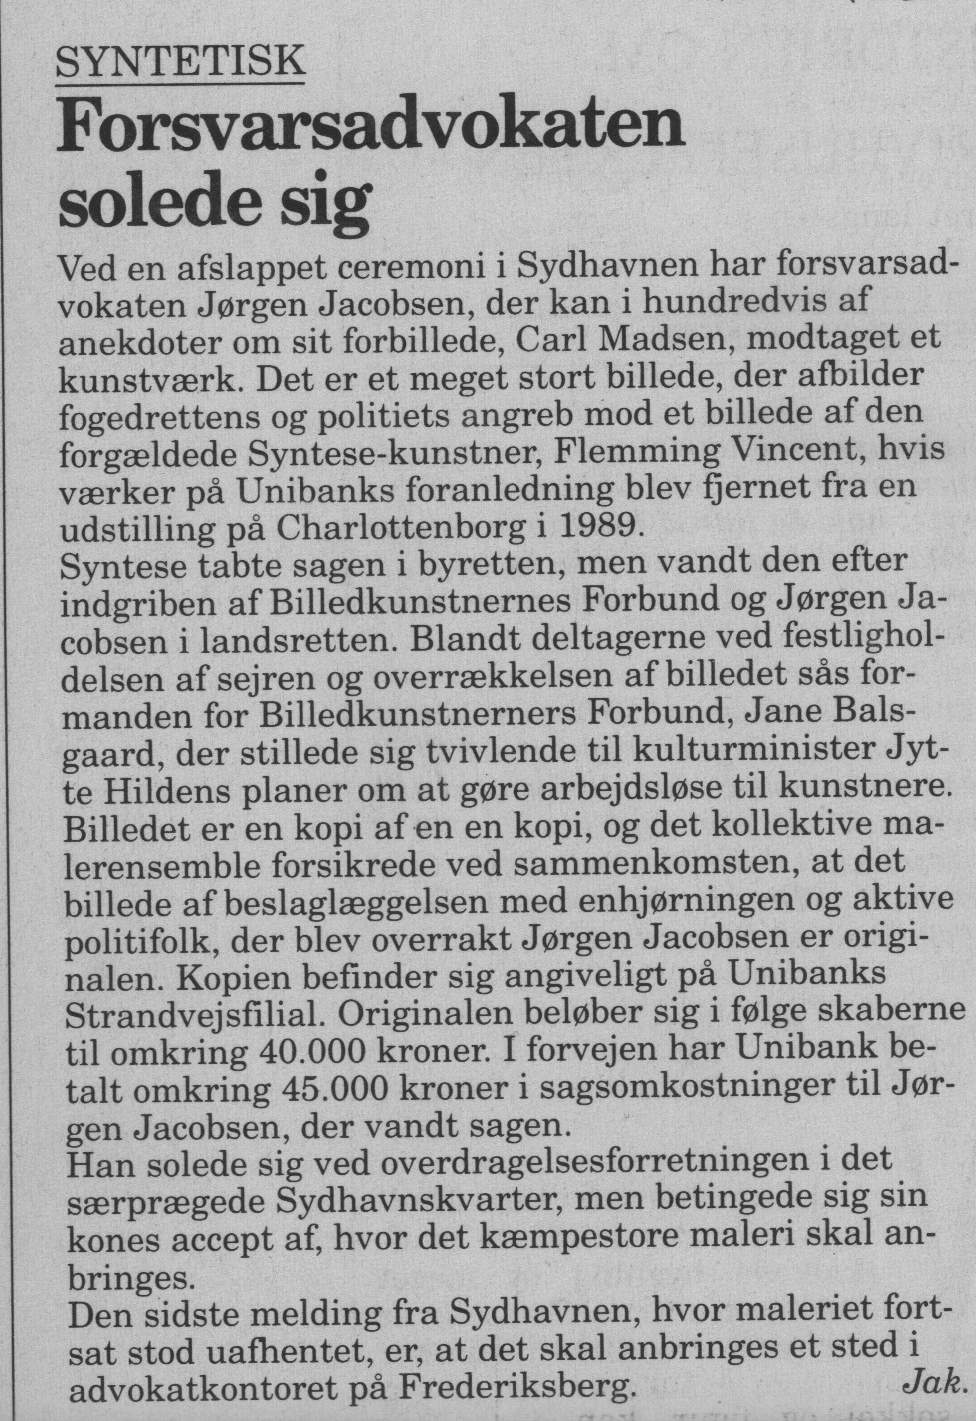 Forsvarsadvokaten solede sig. Omtale (Retssag. Den lange rejse, Charlottenborg, København 1989). Jak. Information.